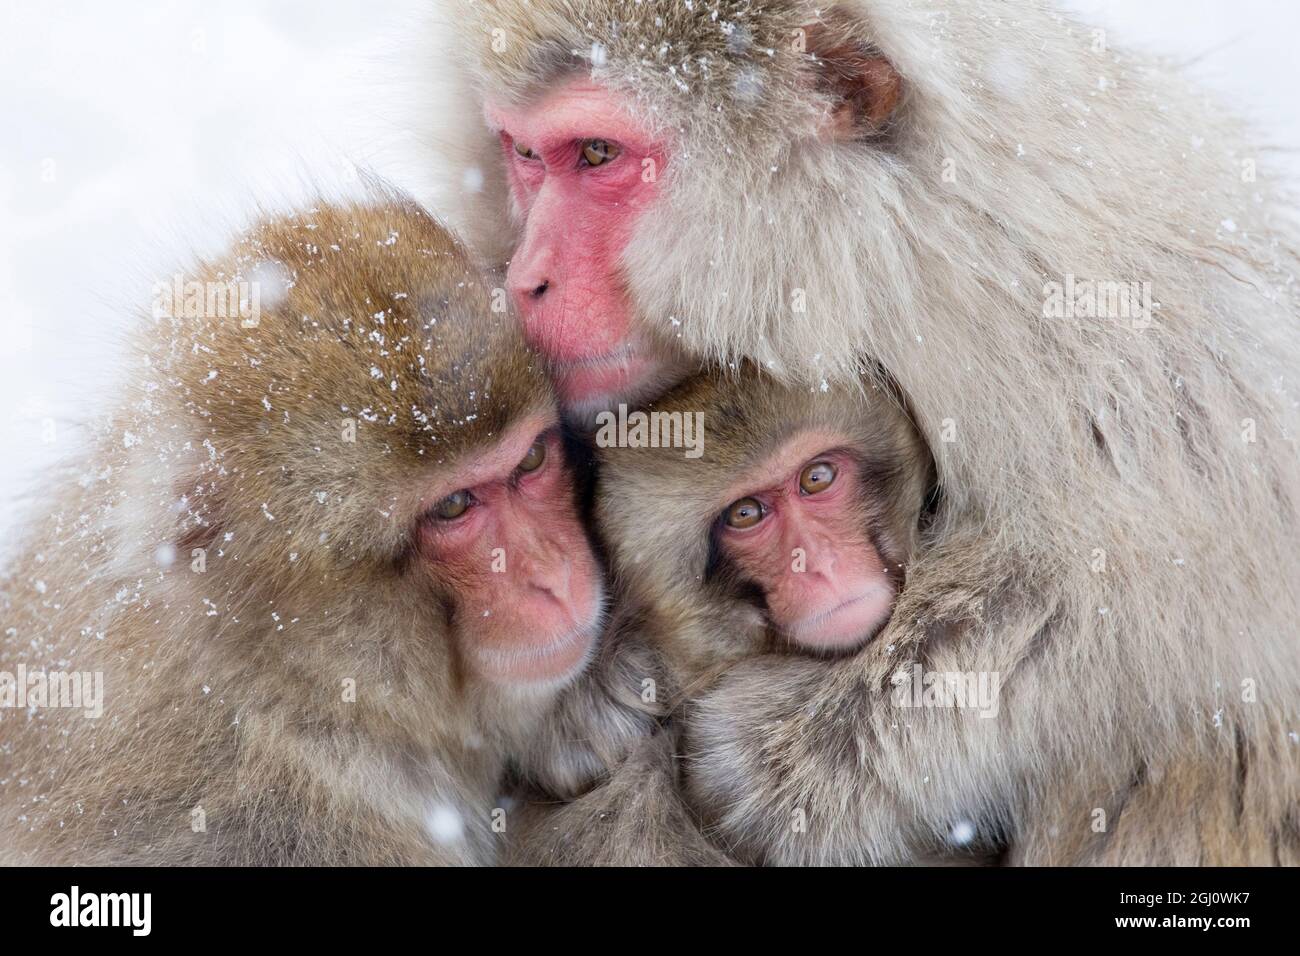 Asie, Japon, Nagano, Jigokudani Yaen Koen, Parc des singes des neiges, Macaque japonais, Macaca fuscata. Une macaque japonaise de mère se rencontre avec ses deux offsprin Banque D'Images